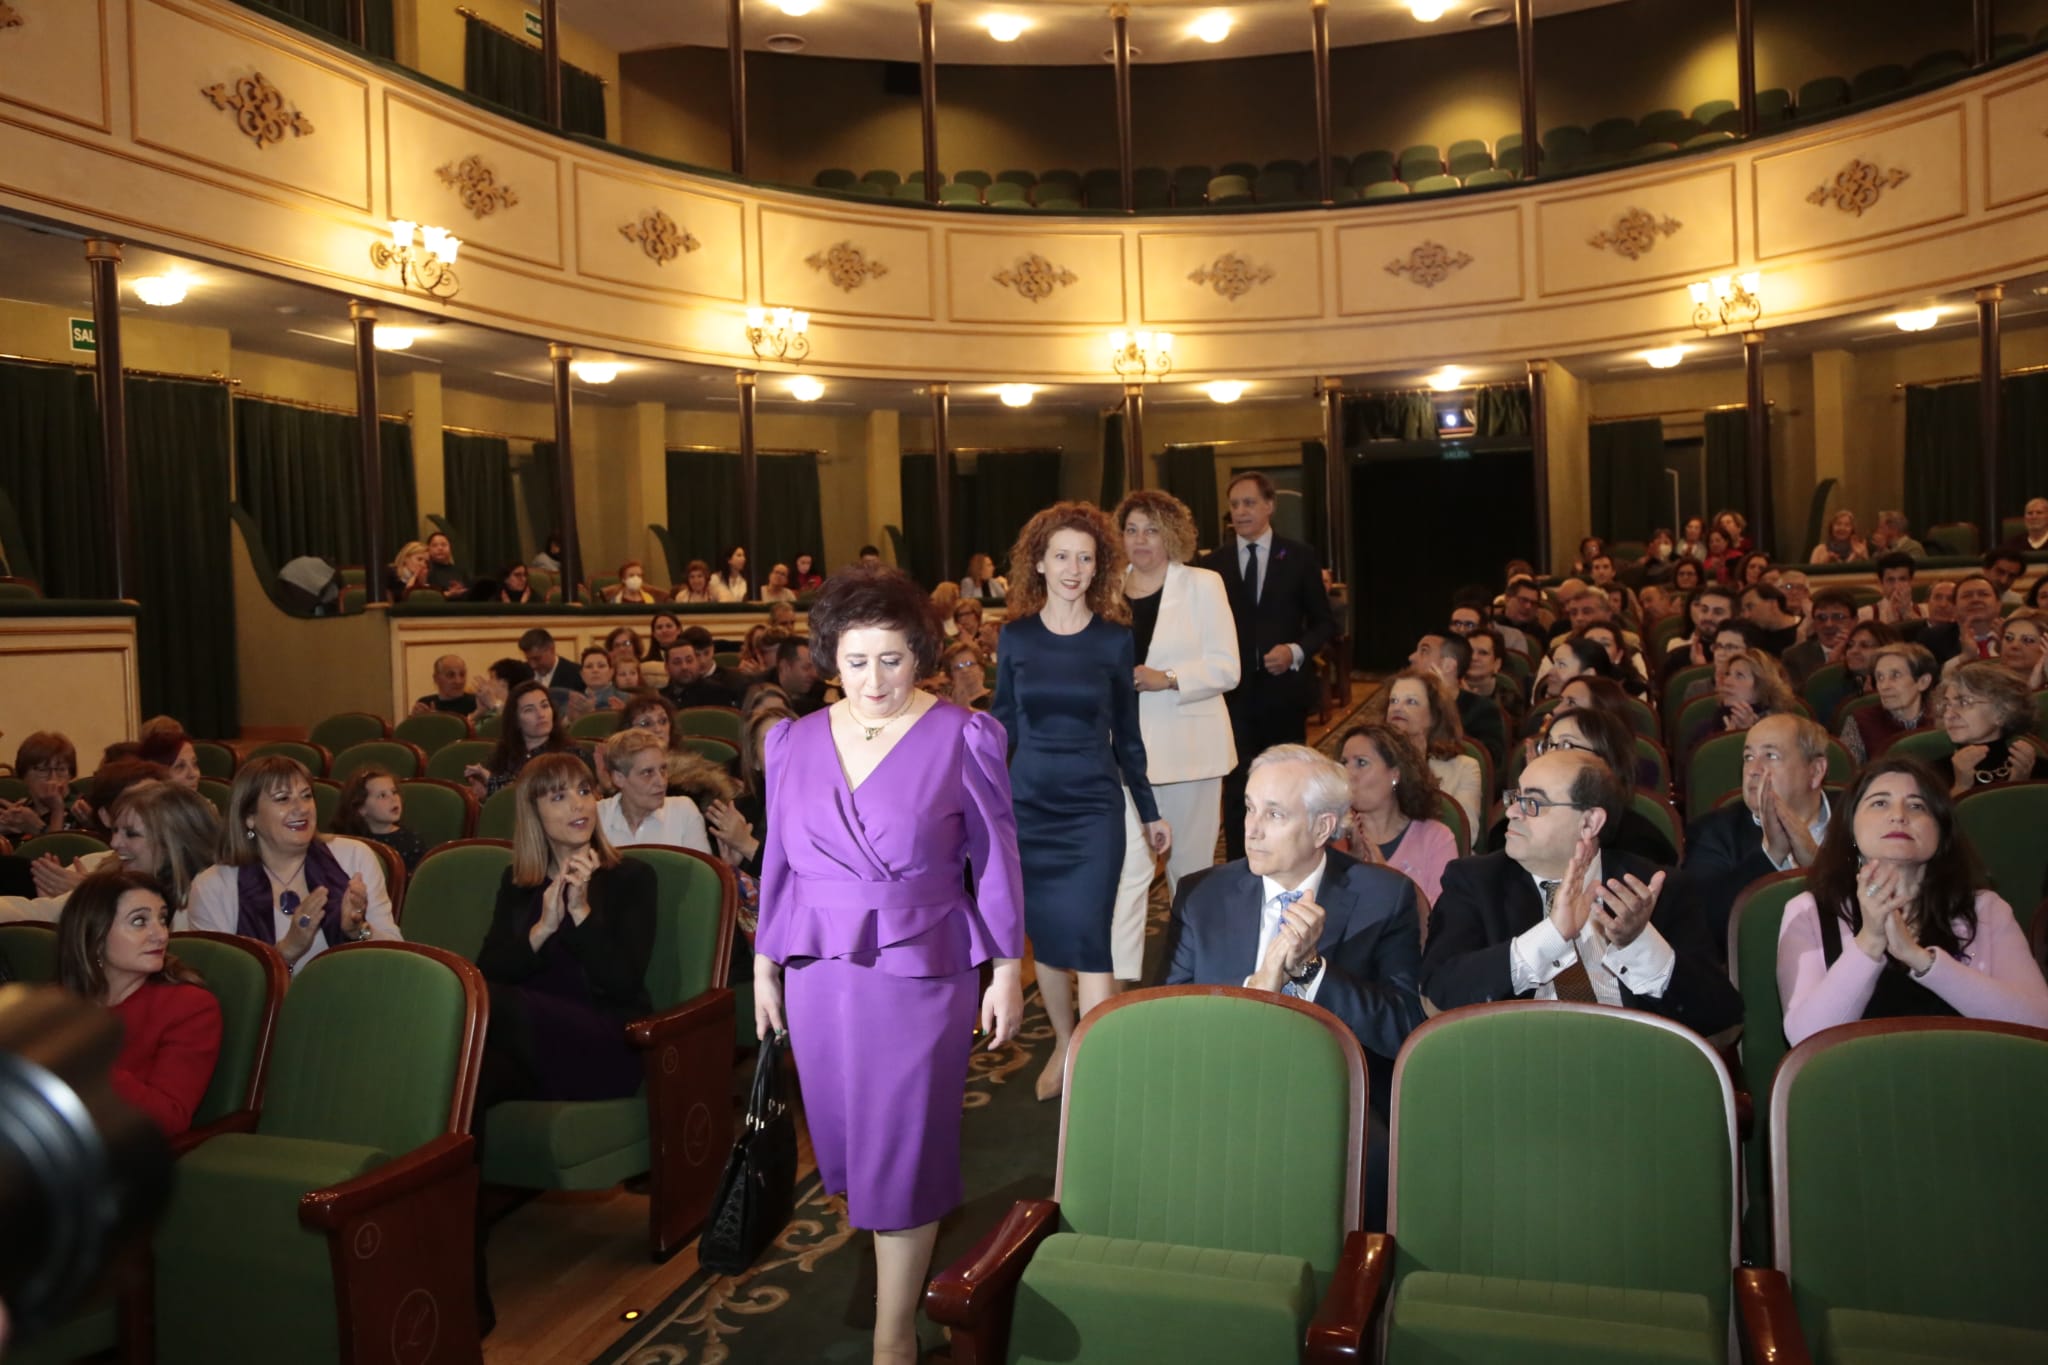 Fotos: Salamanca homenajea a Marta del Pozo, María Victoria Mateos y María Ángeles Hernández este 8 de marzo